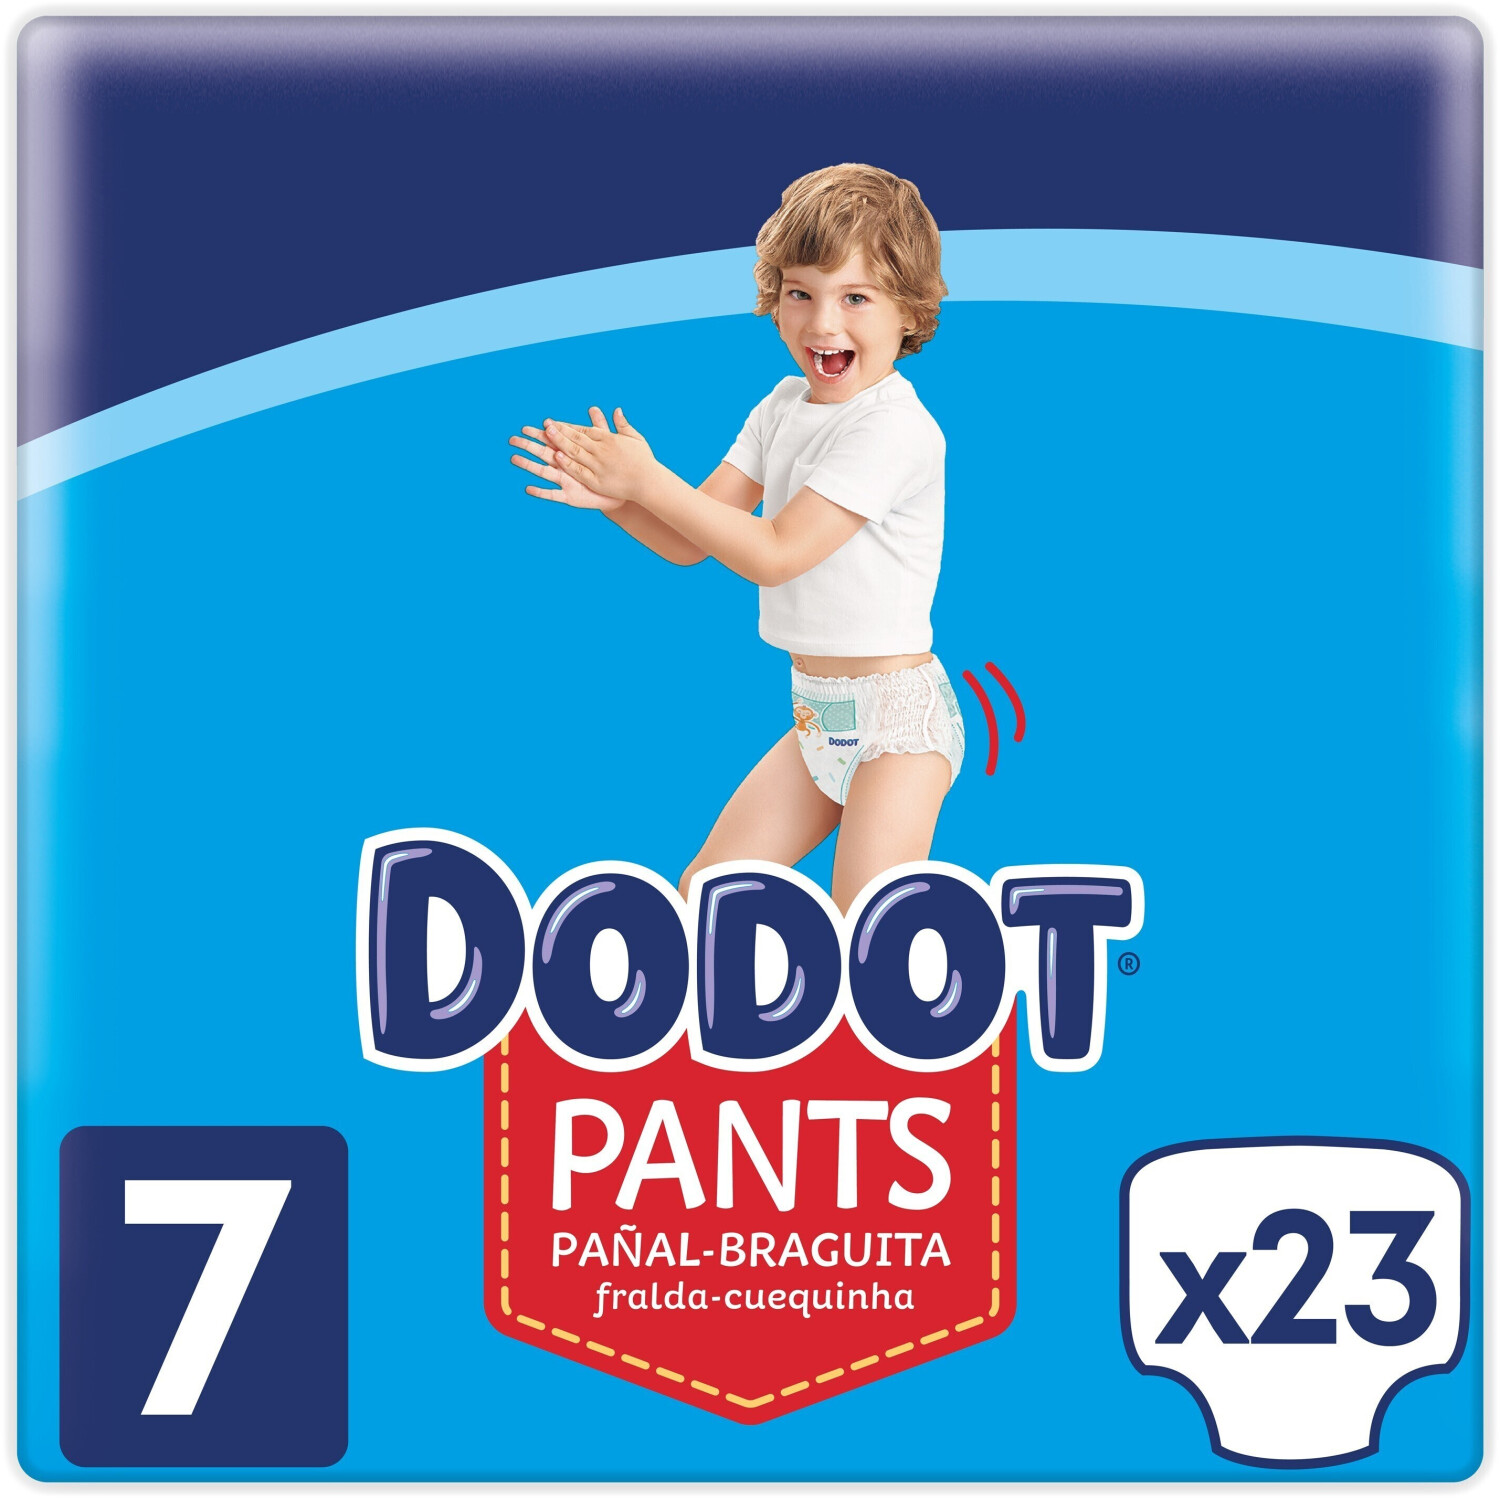 Dodot Pants T7, 23 Pañales, 17kg+ mejor precio